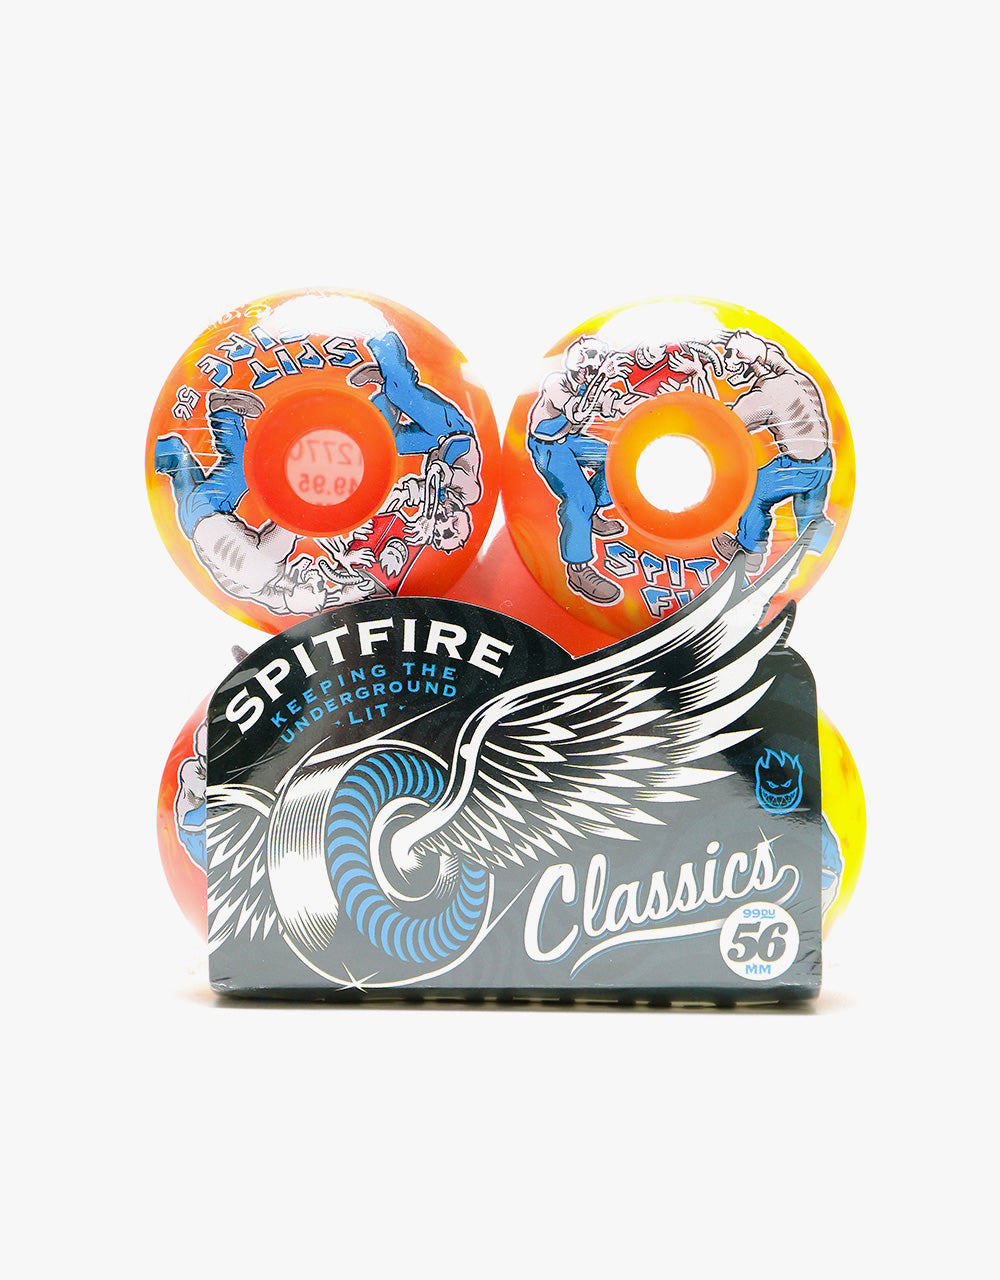 Spitfire Firefight Classics 99d Skateboard Wheel - 56mm